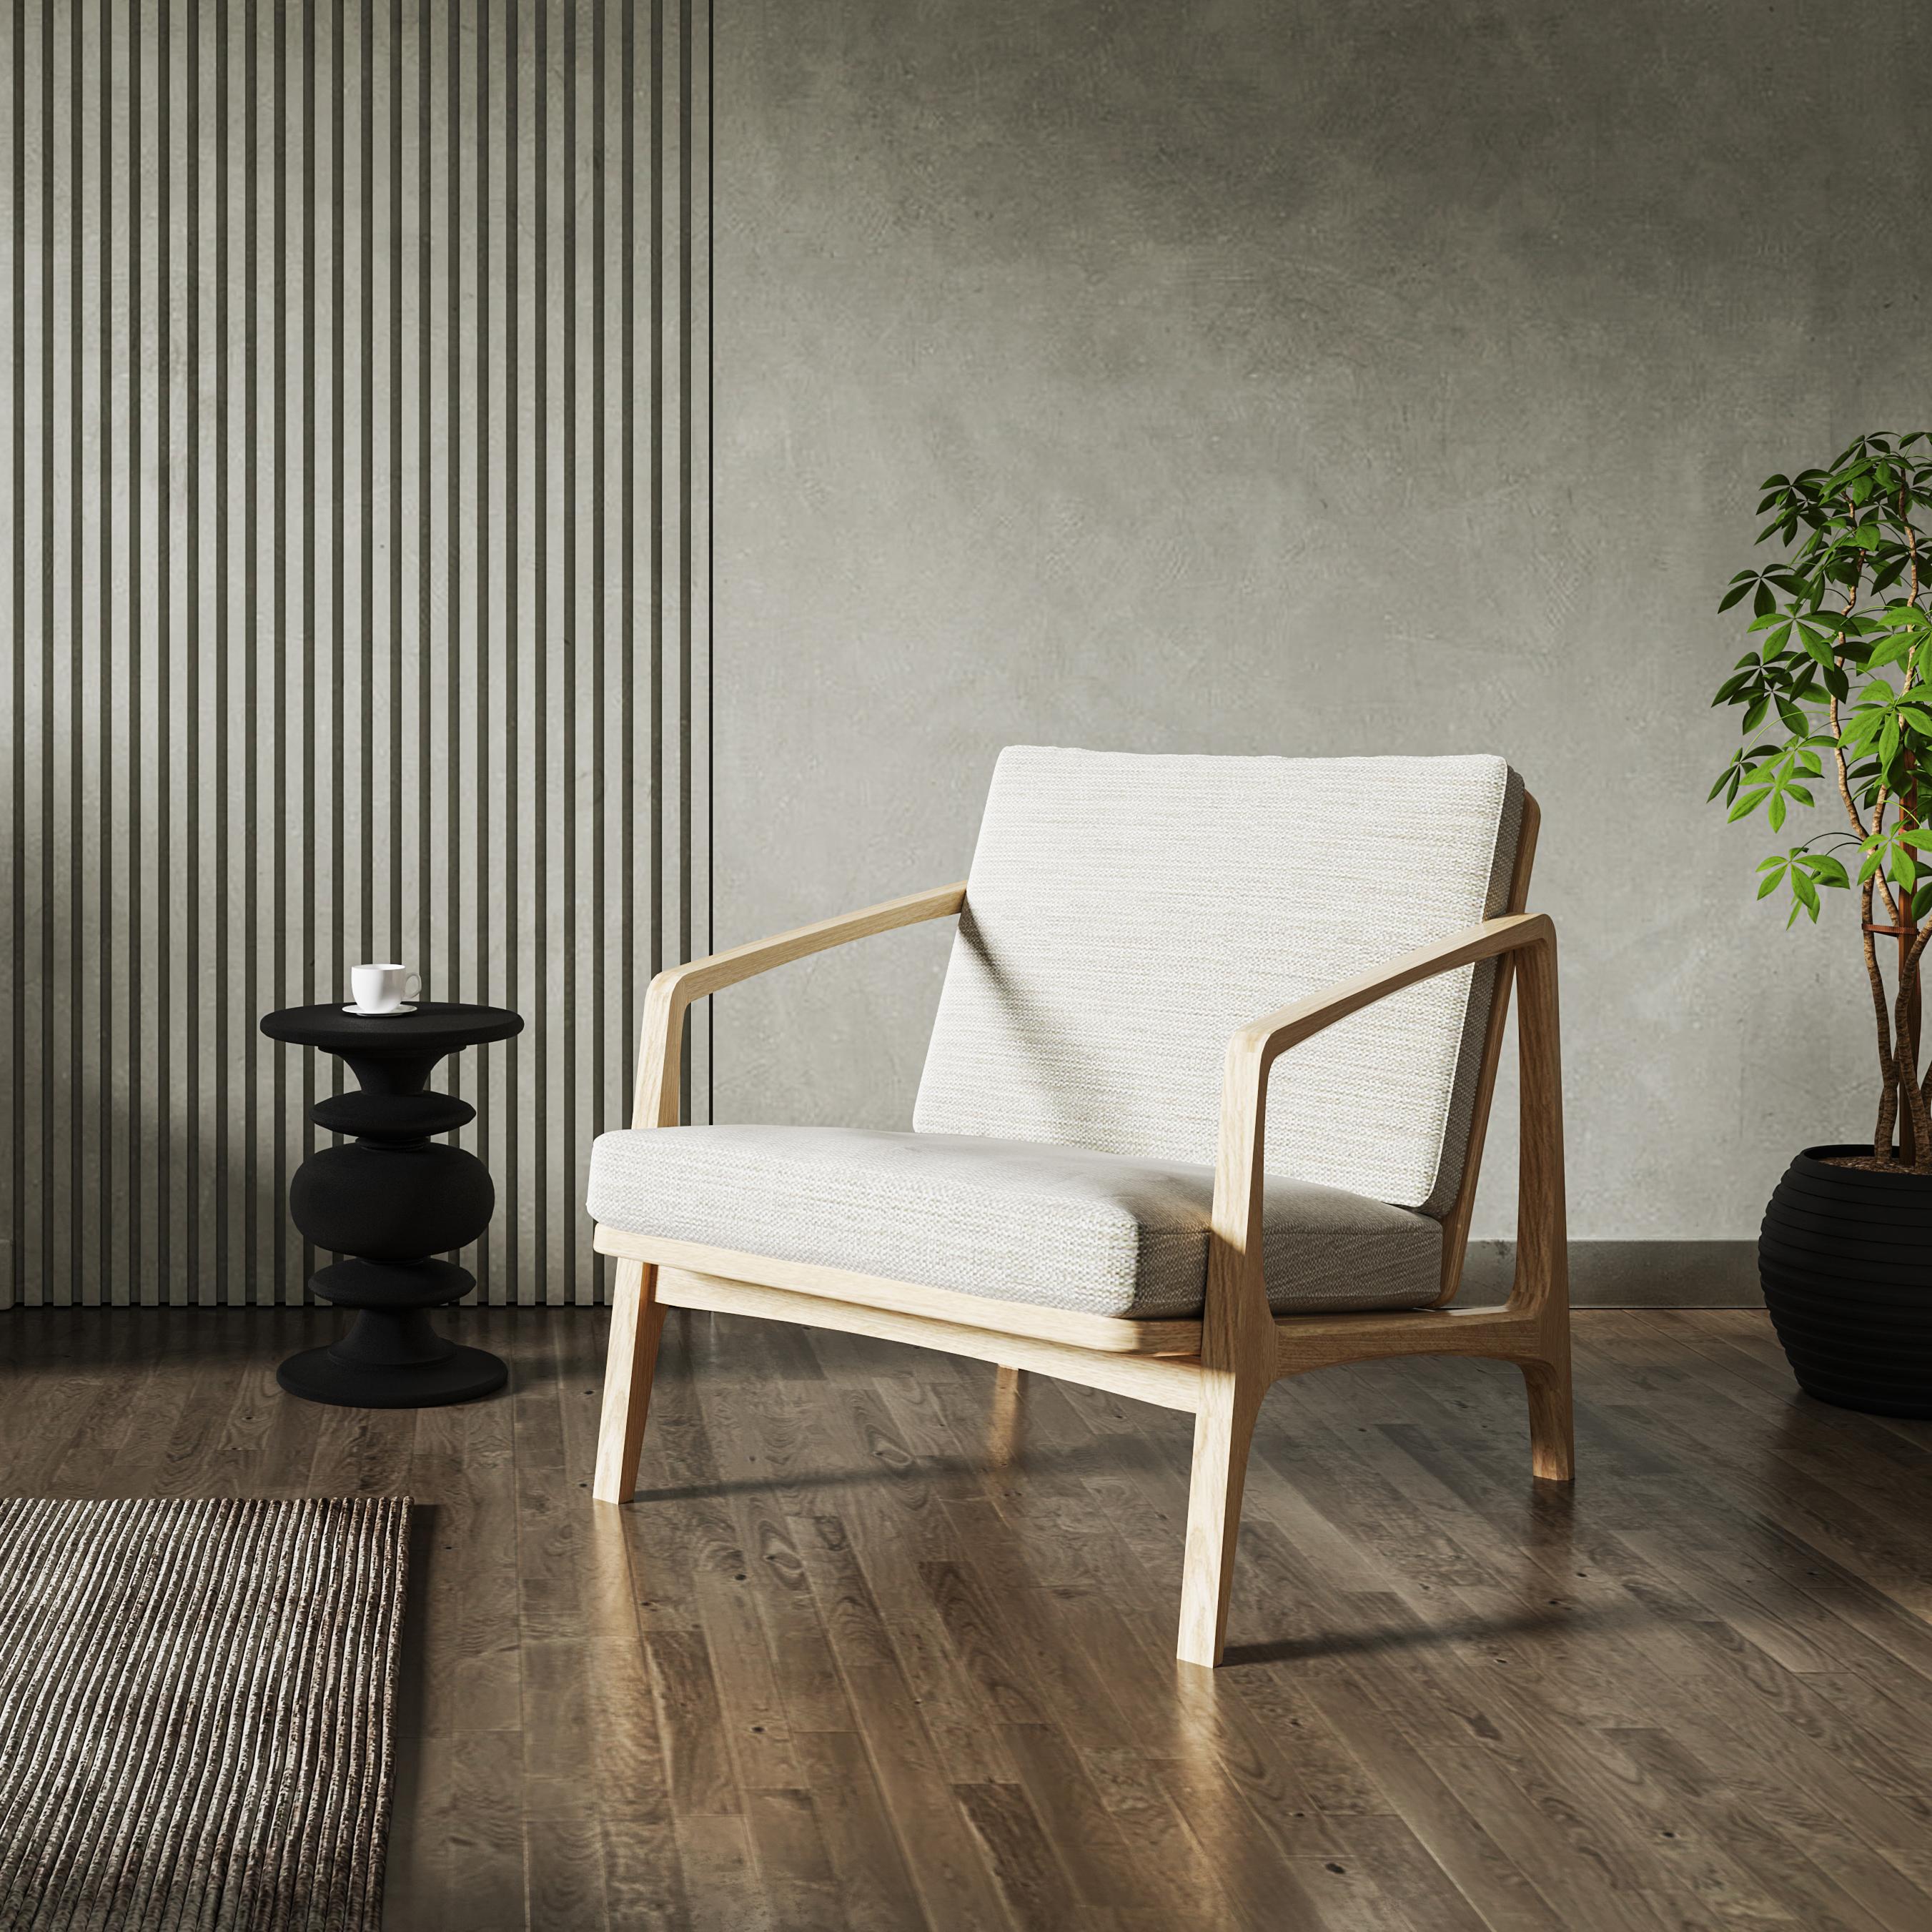 William lounge est une chaise au caractère affirmé, inspirée par les classiques du design du 20e siècle. Nous apportons notre propre interprétation d'un archétype classique qui vous apportera un sentiment de nostalgie avec un langage